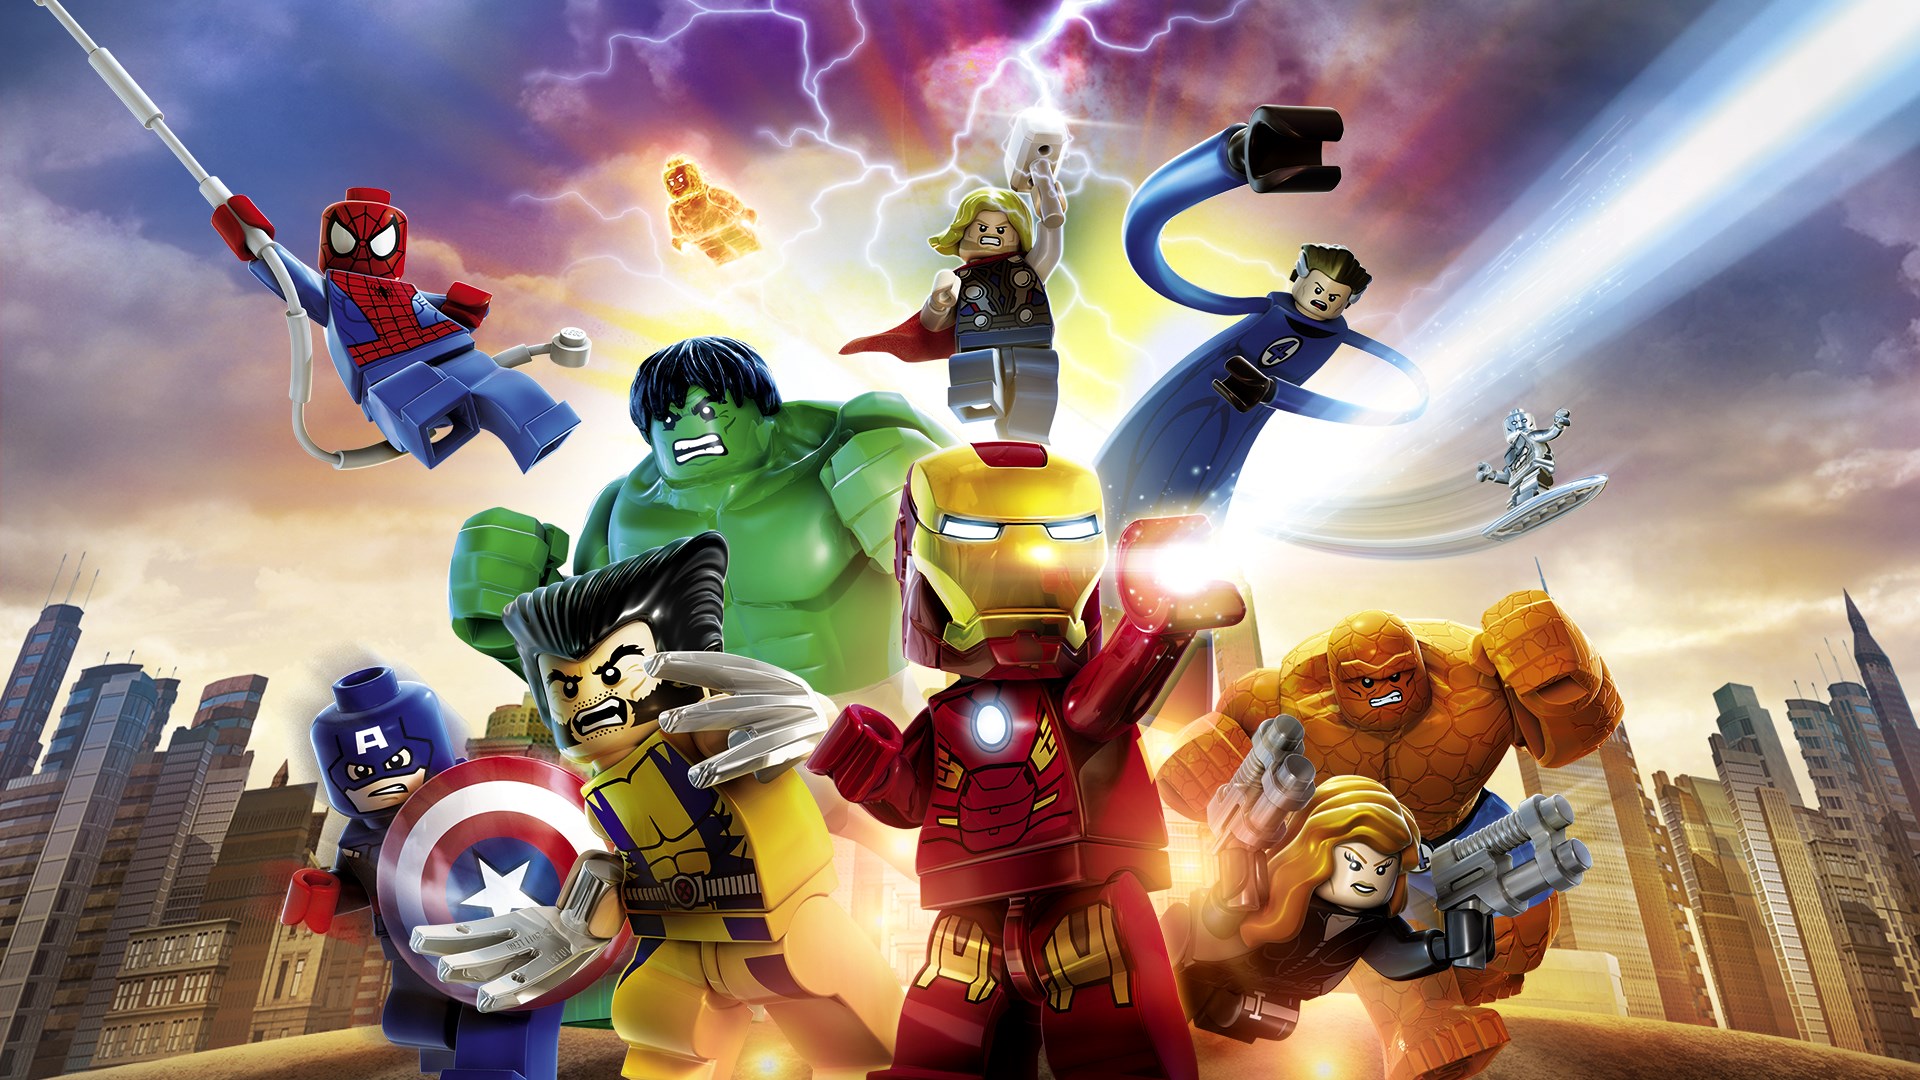 marvel super heroes avengers lego